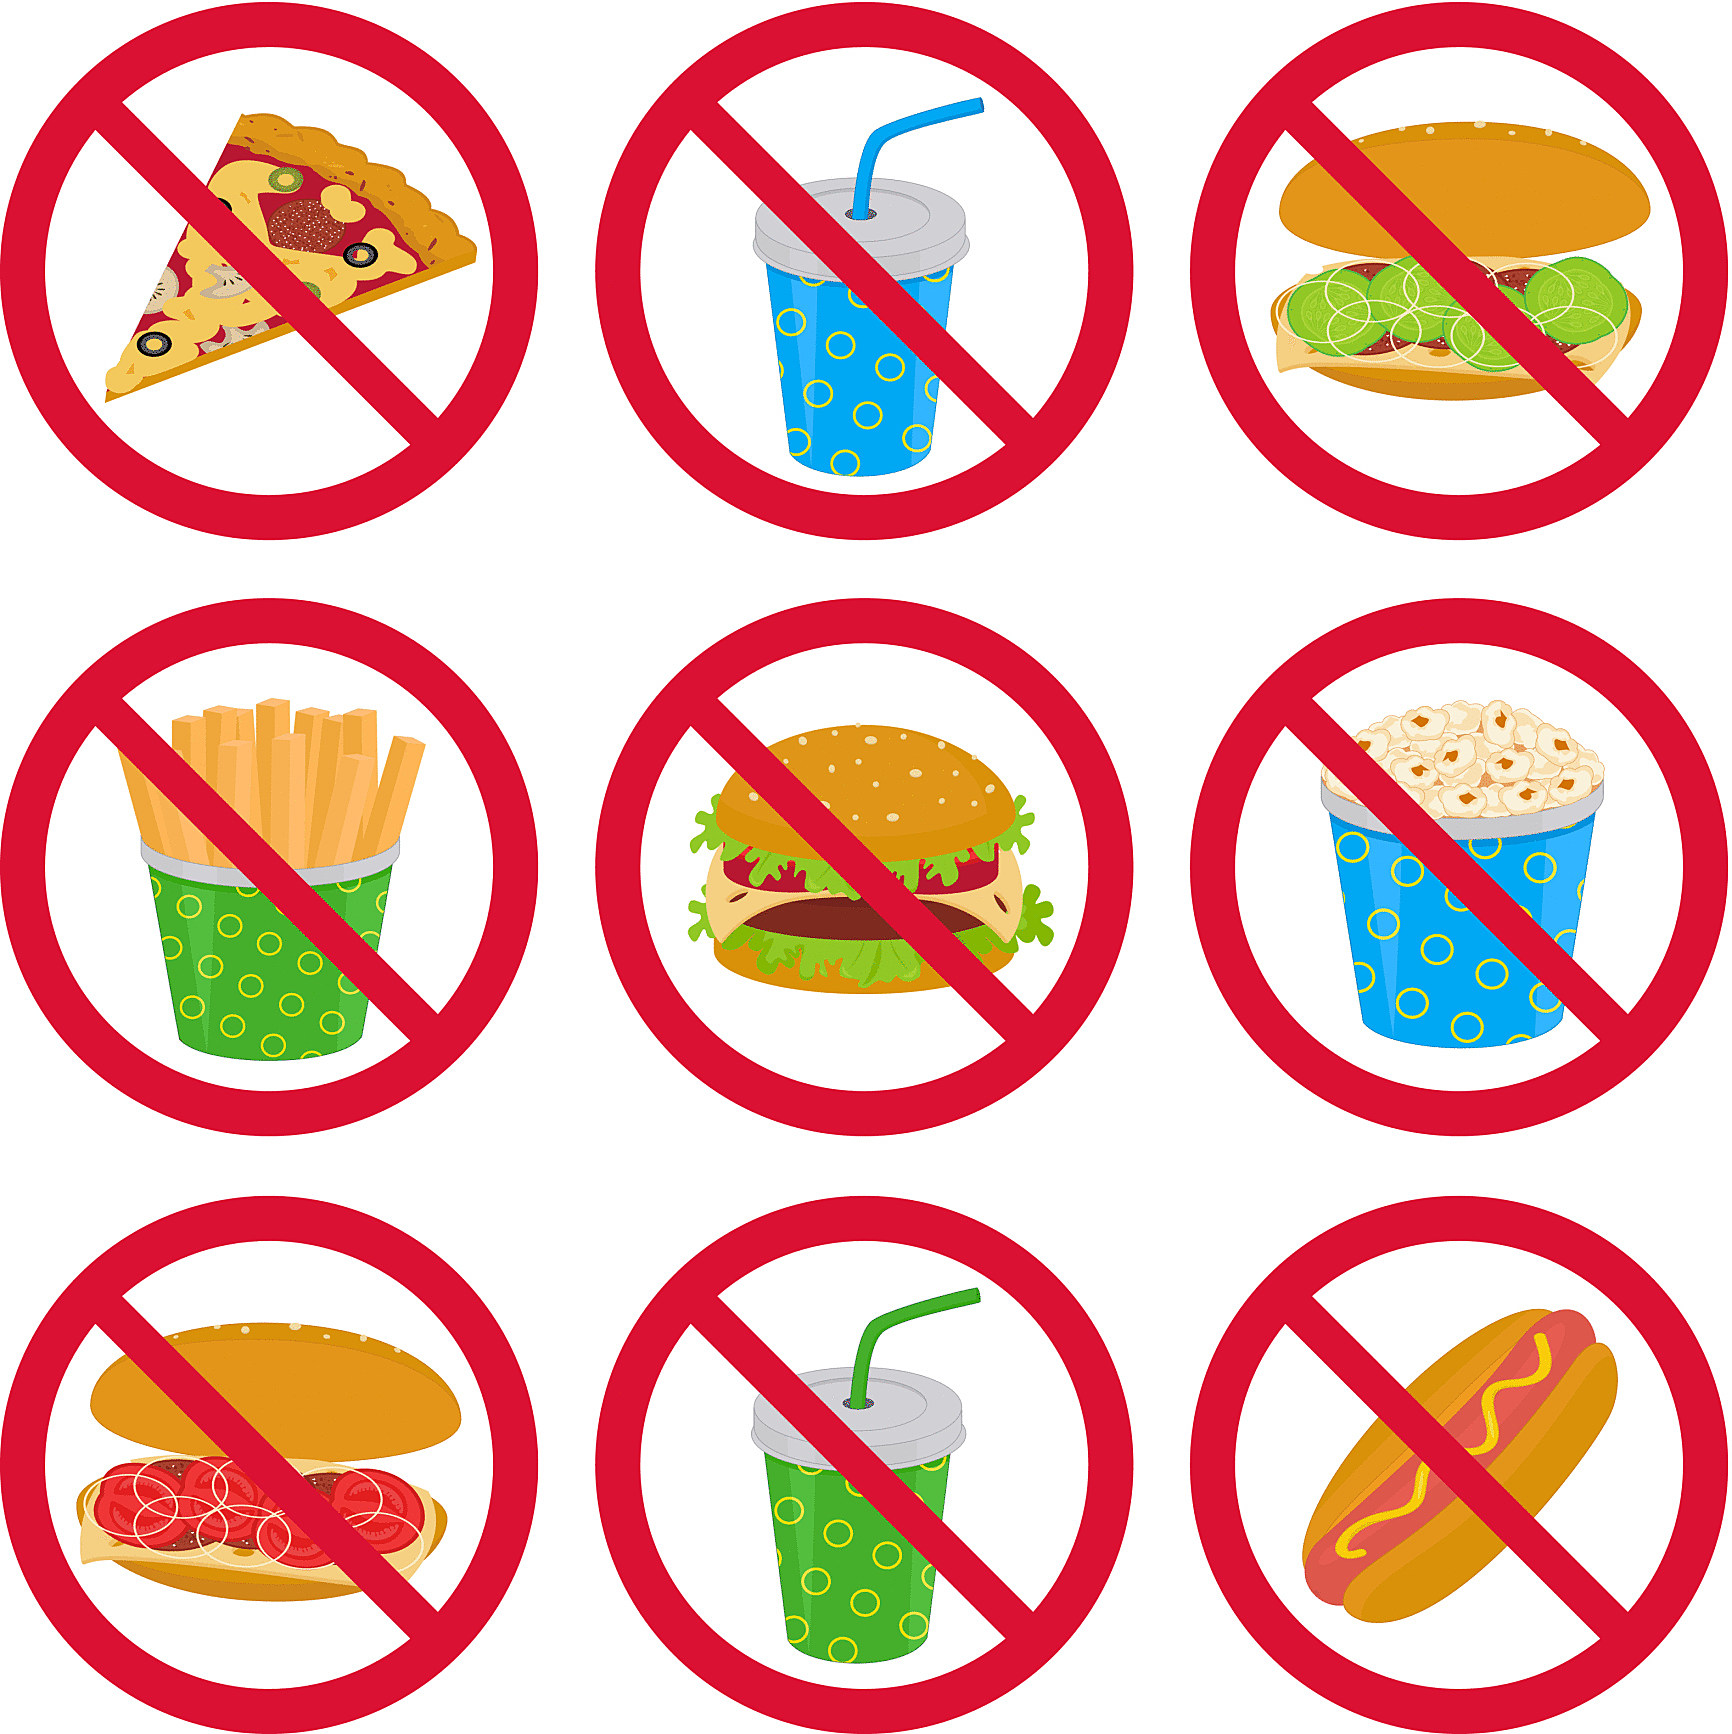 6 апреля что можно что нельзя. Запрет на вредную пищу. Знаки здорового образа жизни. Знак запрета вредной еды. Рисунок вредные привычки в еде.